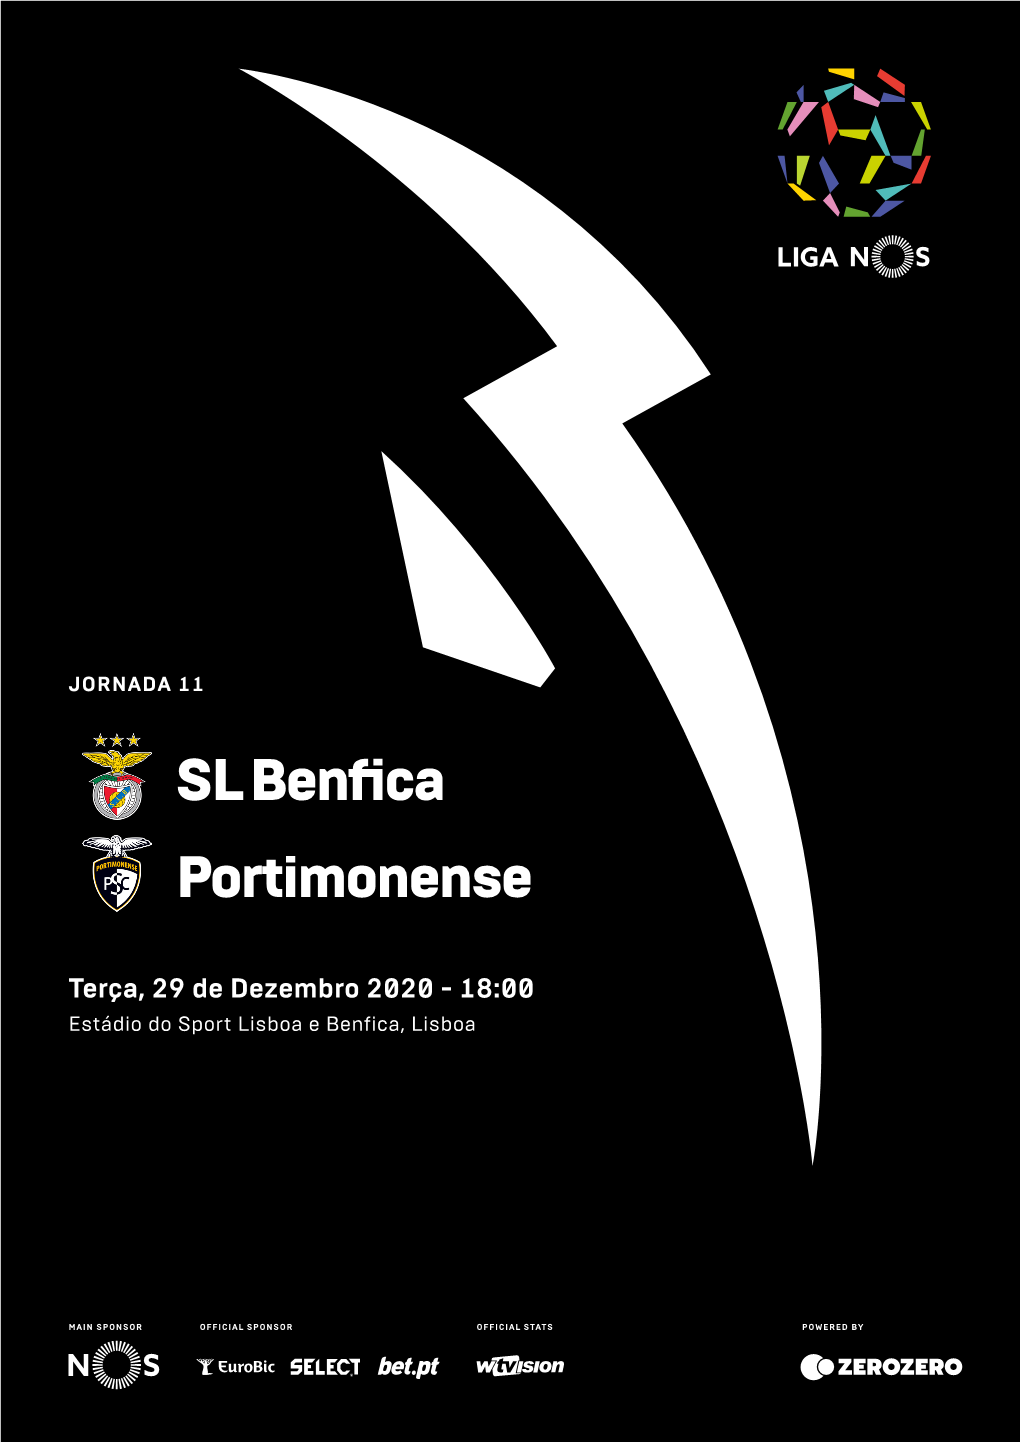 SL Benfica Portimonense